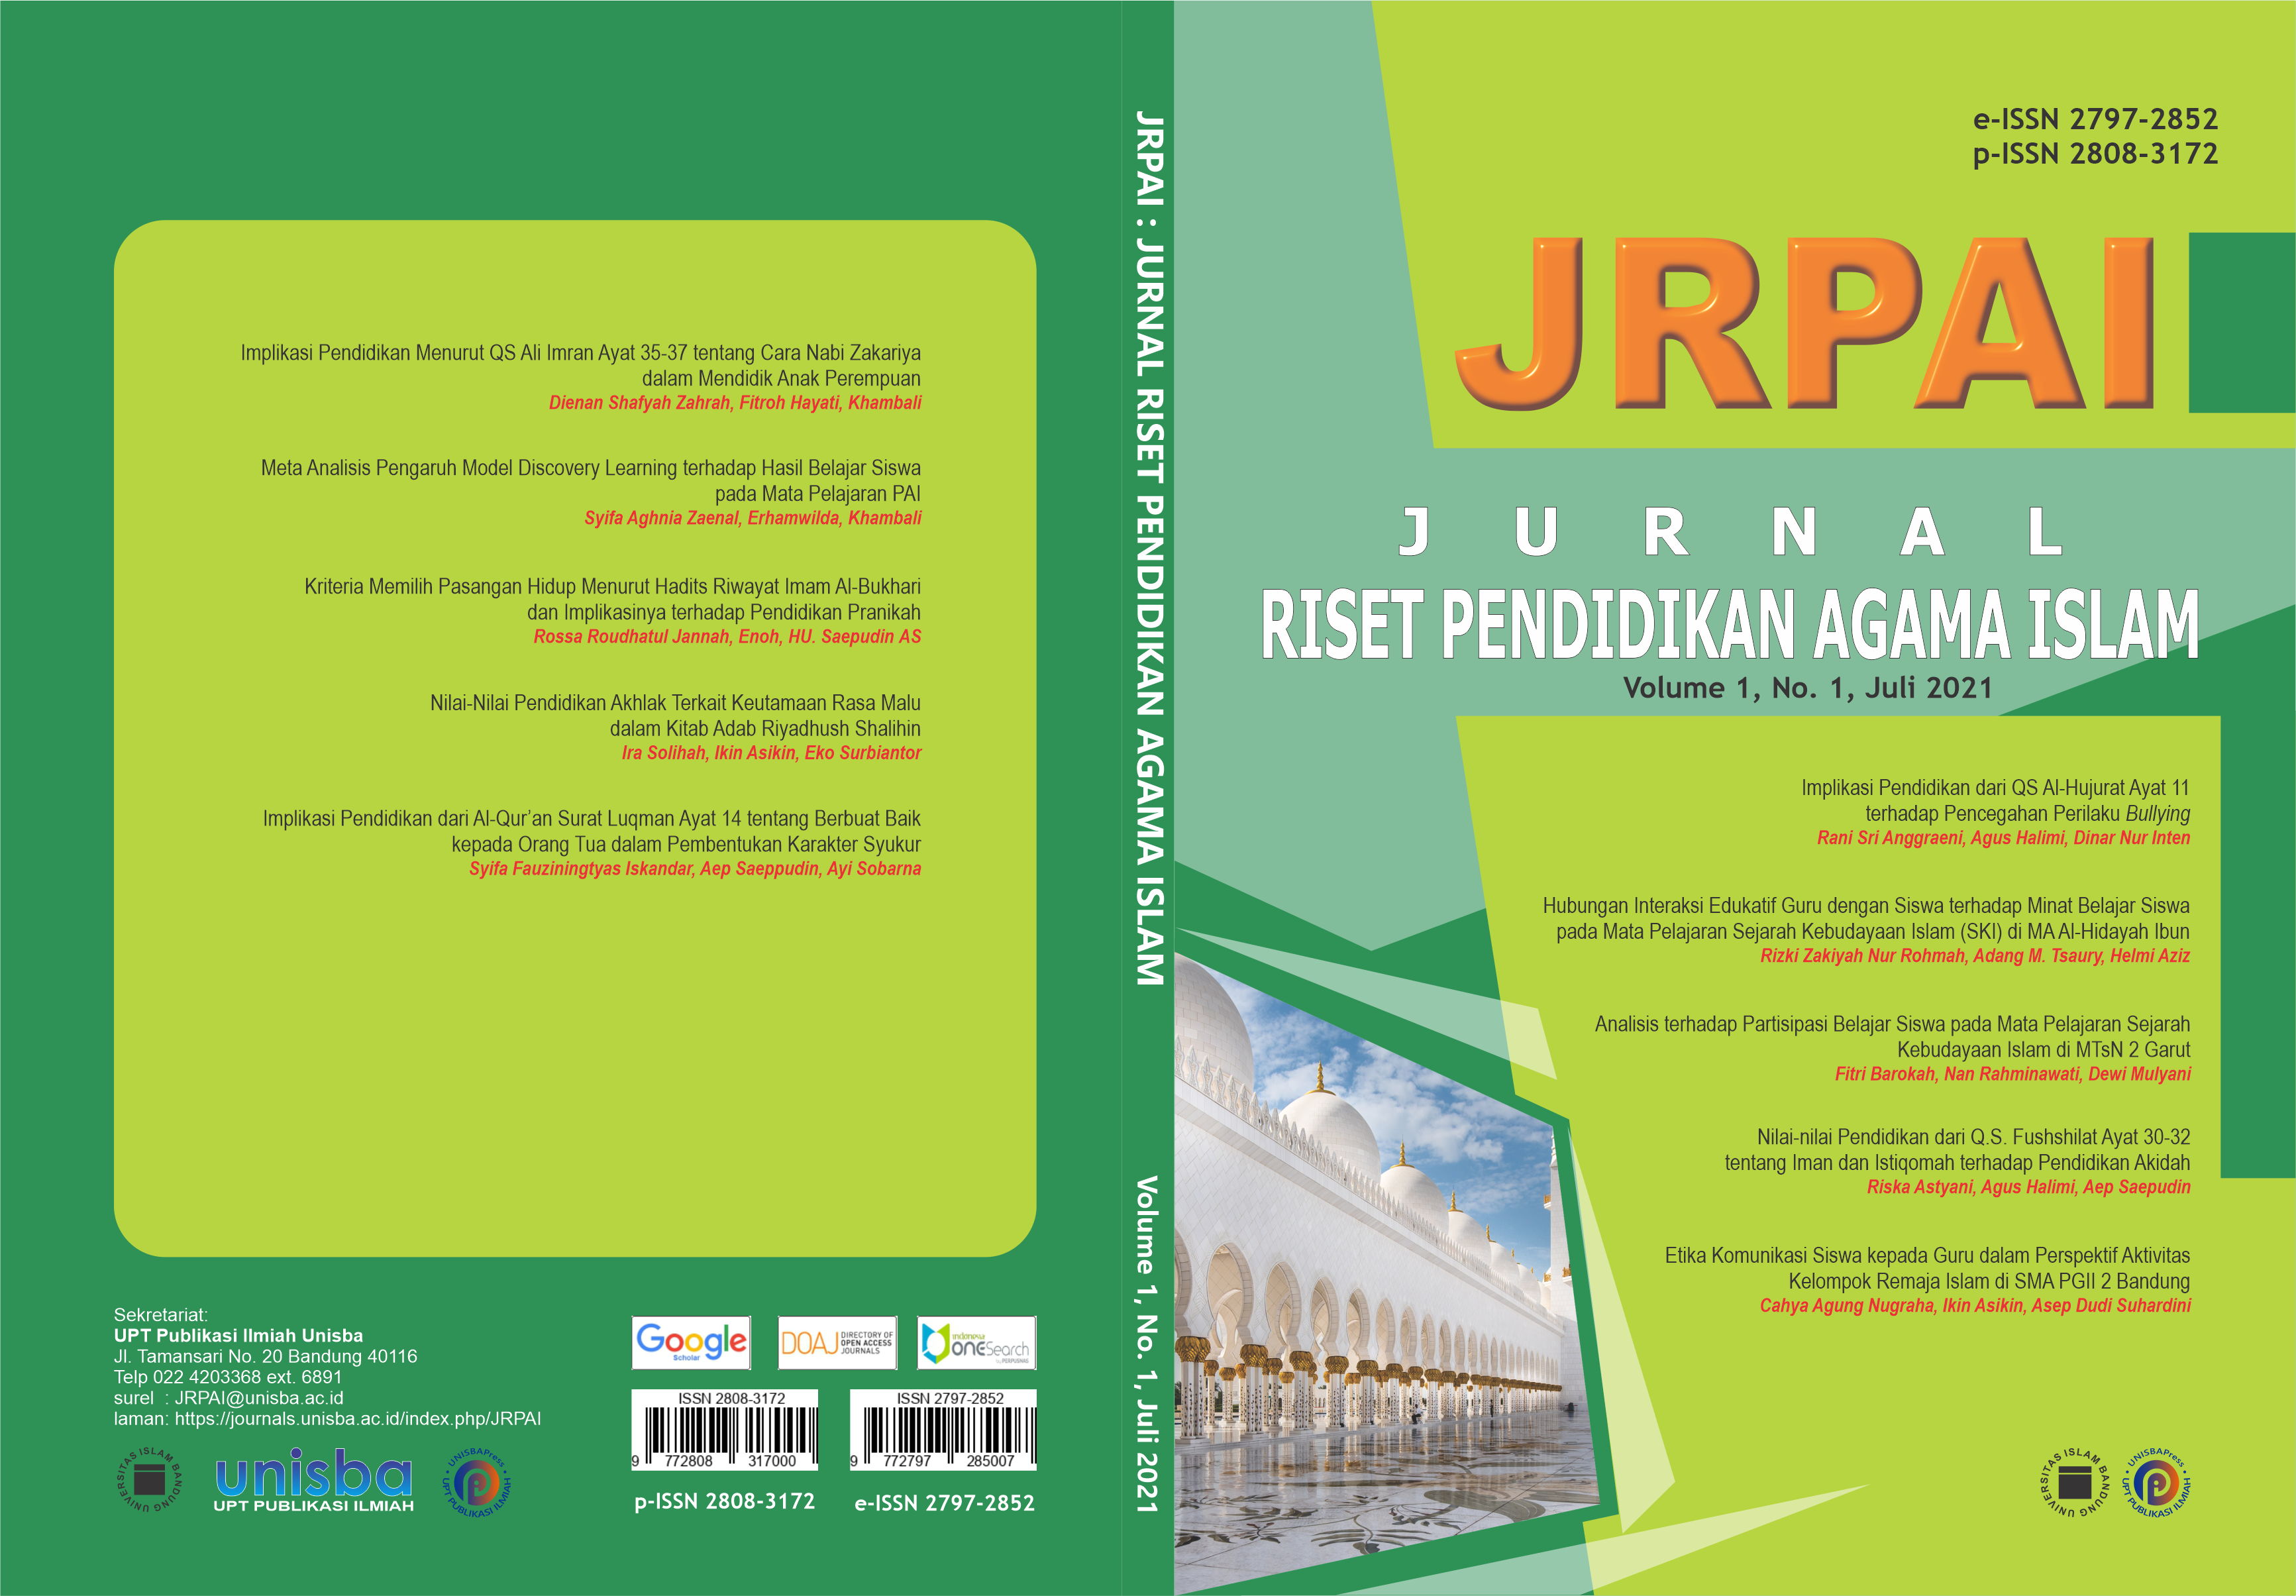 					View Volume 1, No. 1, Juli 2021, Jurnal Riset Pendidikan Agama Islam (JRPAI)
				